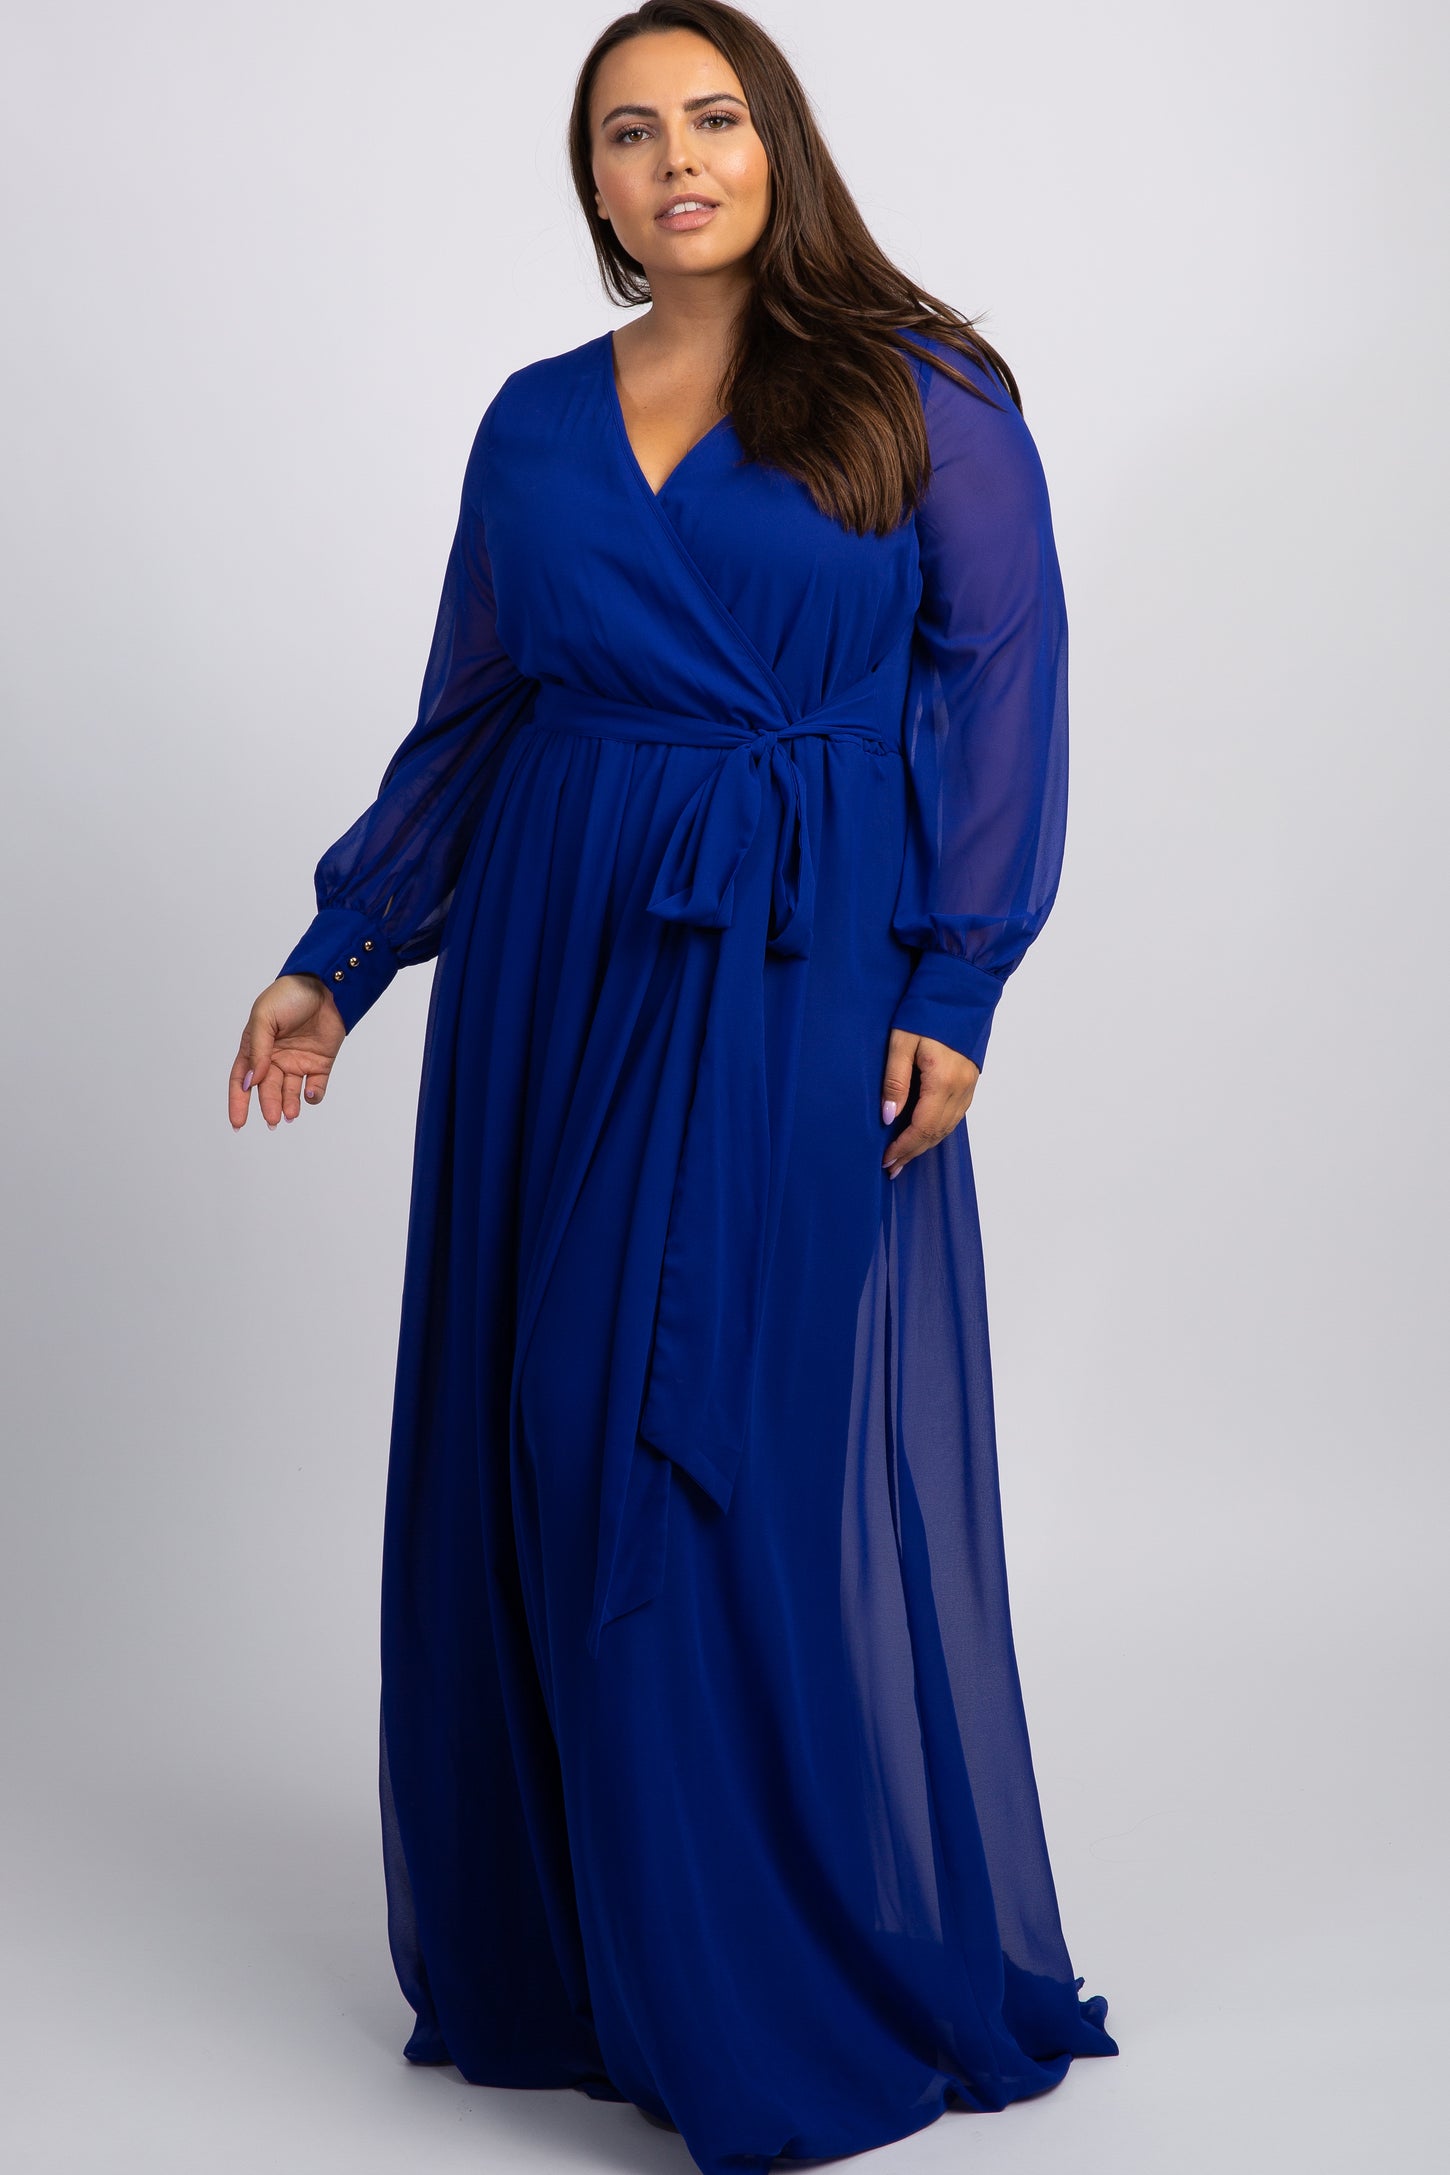 Royal Blue Chiffon Long Sleeve Pleated Plus Maternity Maxi Dress– PinkBlush